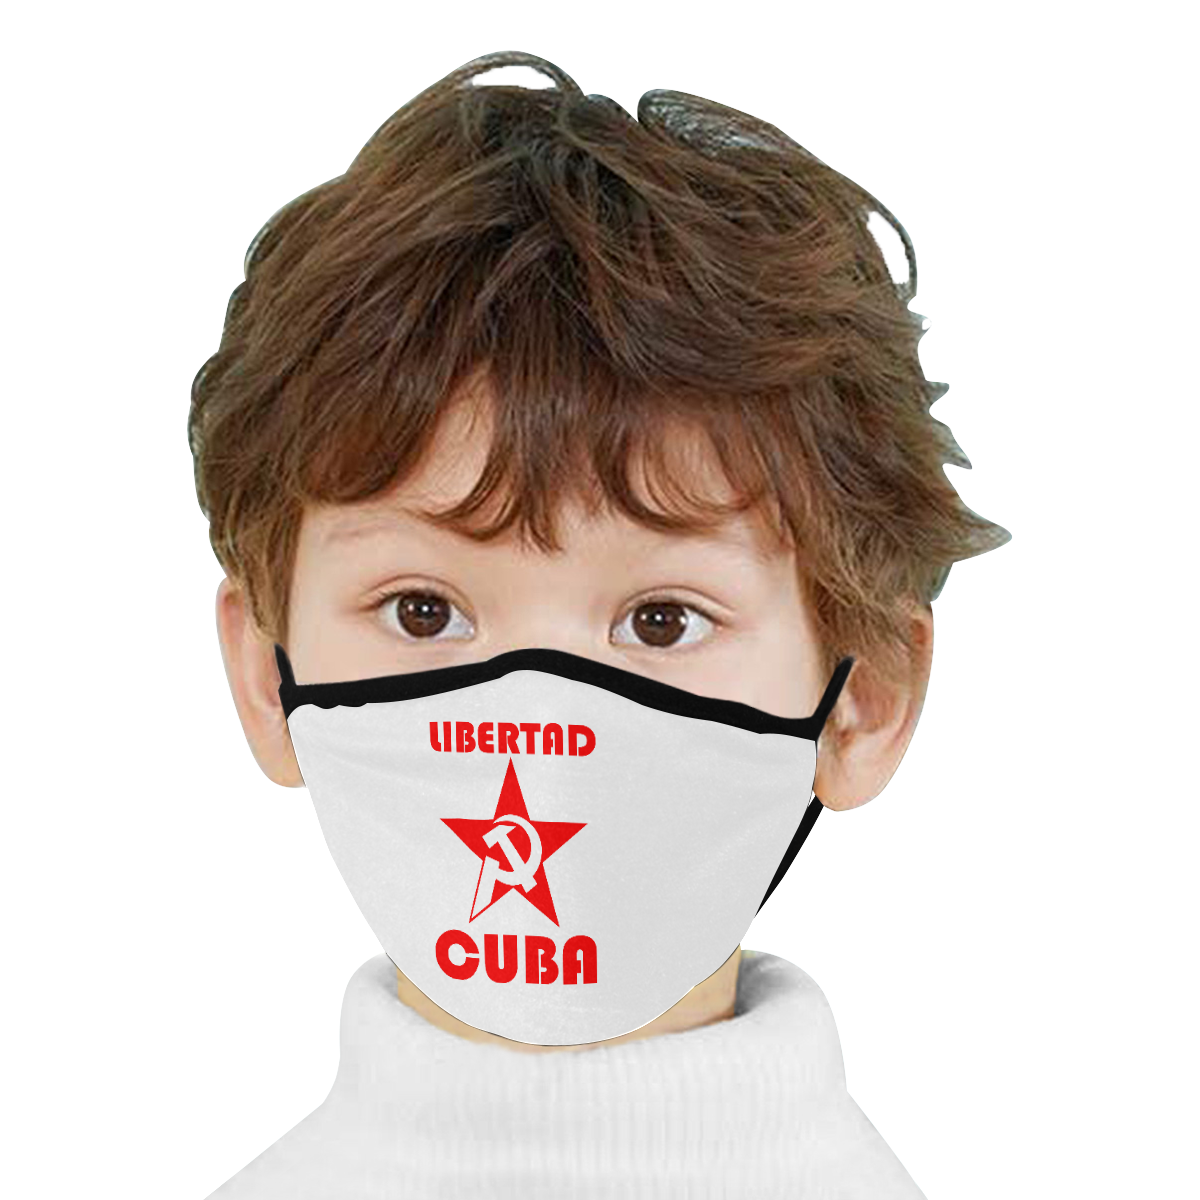 LIBERTAD CUBA Mouth Mask